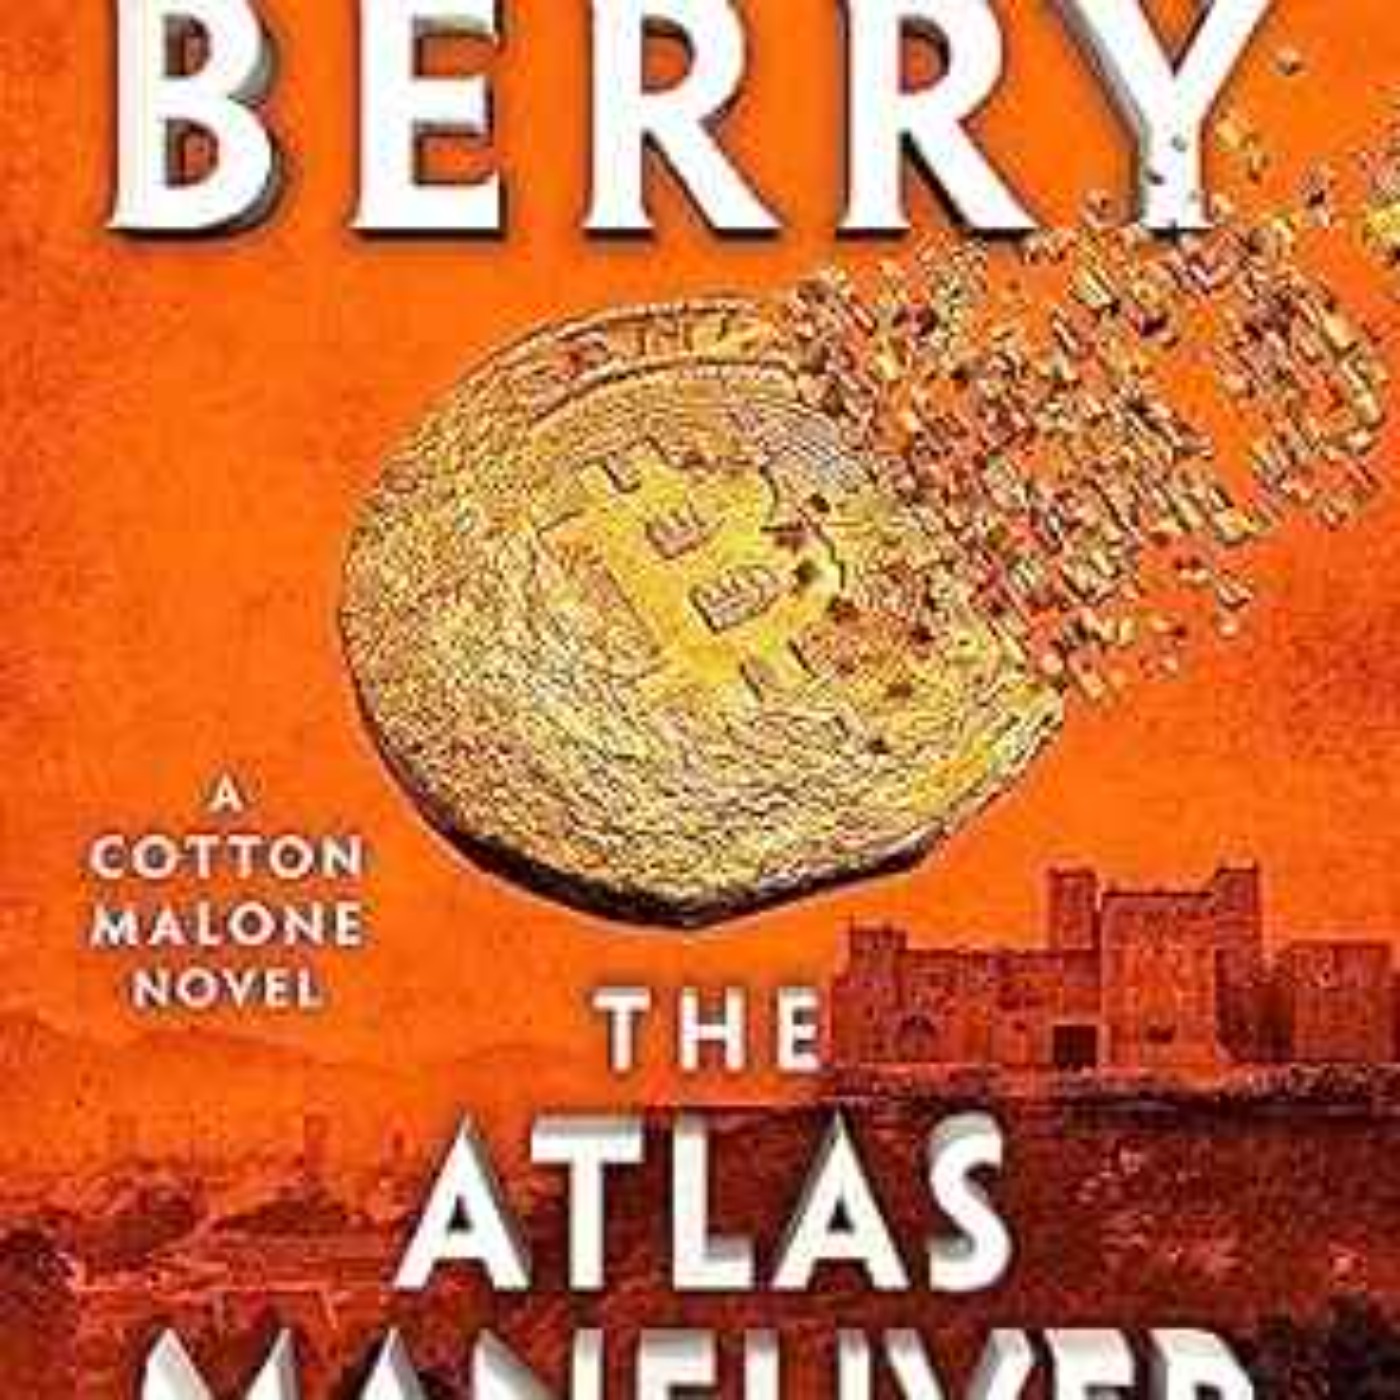 Steve Berry - The Atlas Maneuver